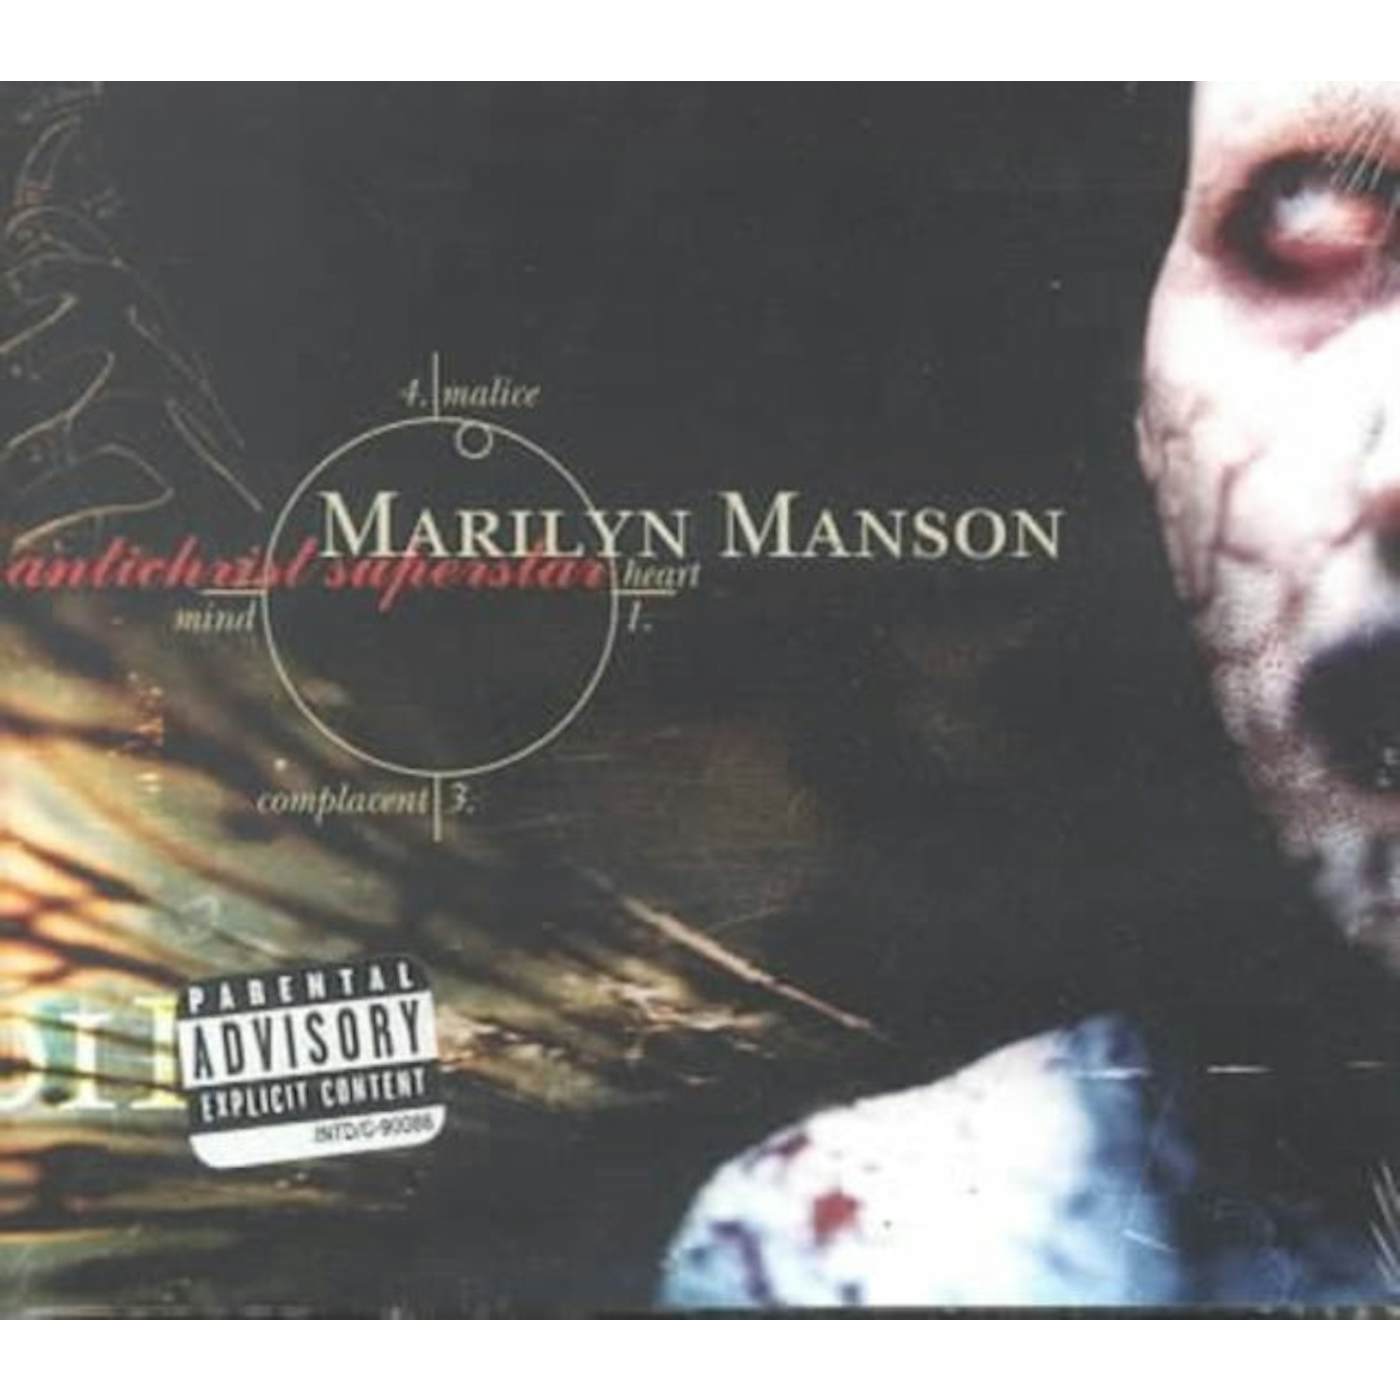 Marilyn Manson CD - Antichrist Superstar